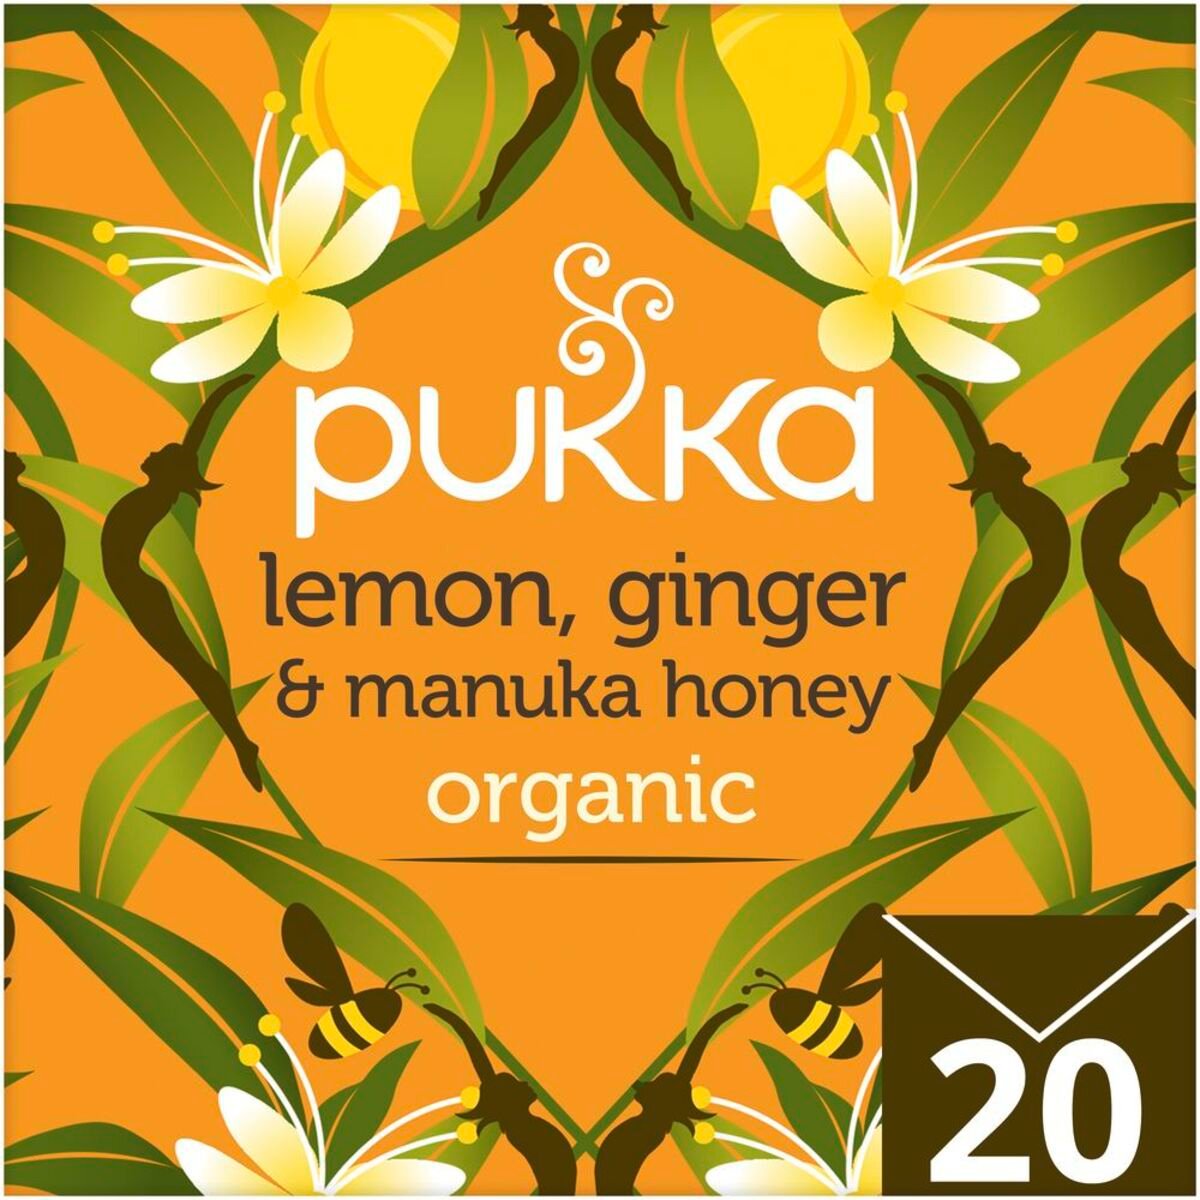 بوكا شاي عضوي بتوليفة أعشاب بنكهة الليمون و الزنجبيل و عسل المانوكا  20 حبه